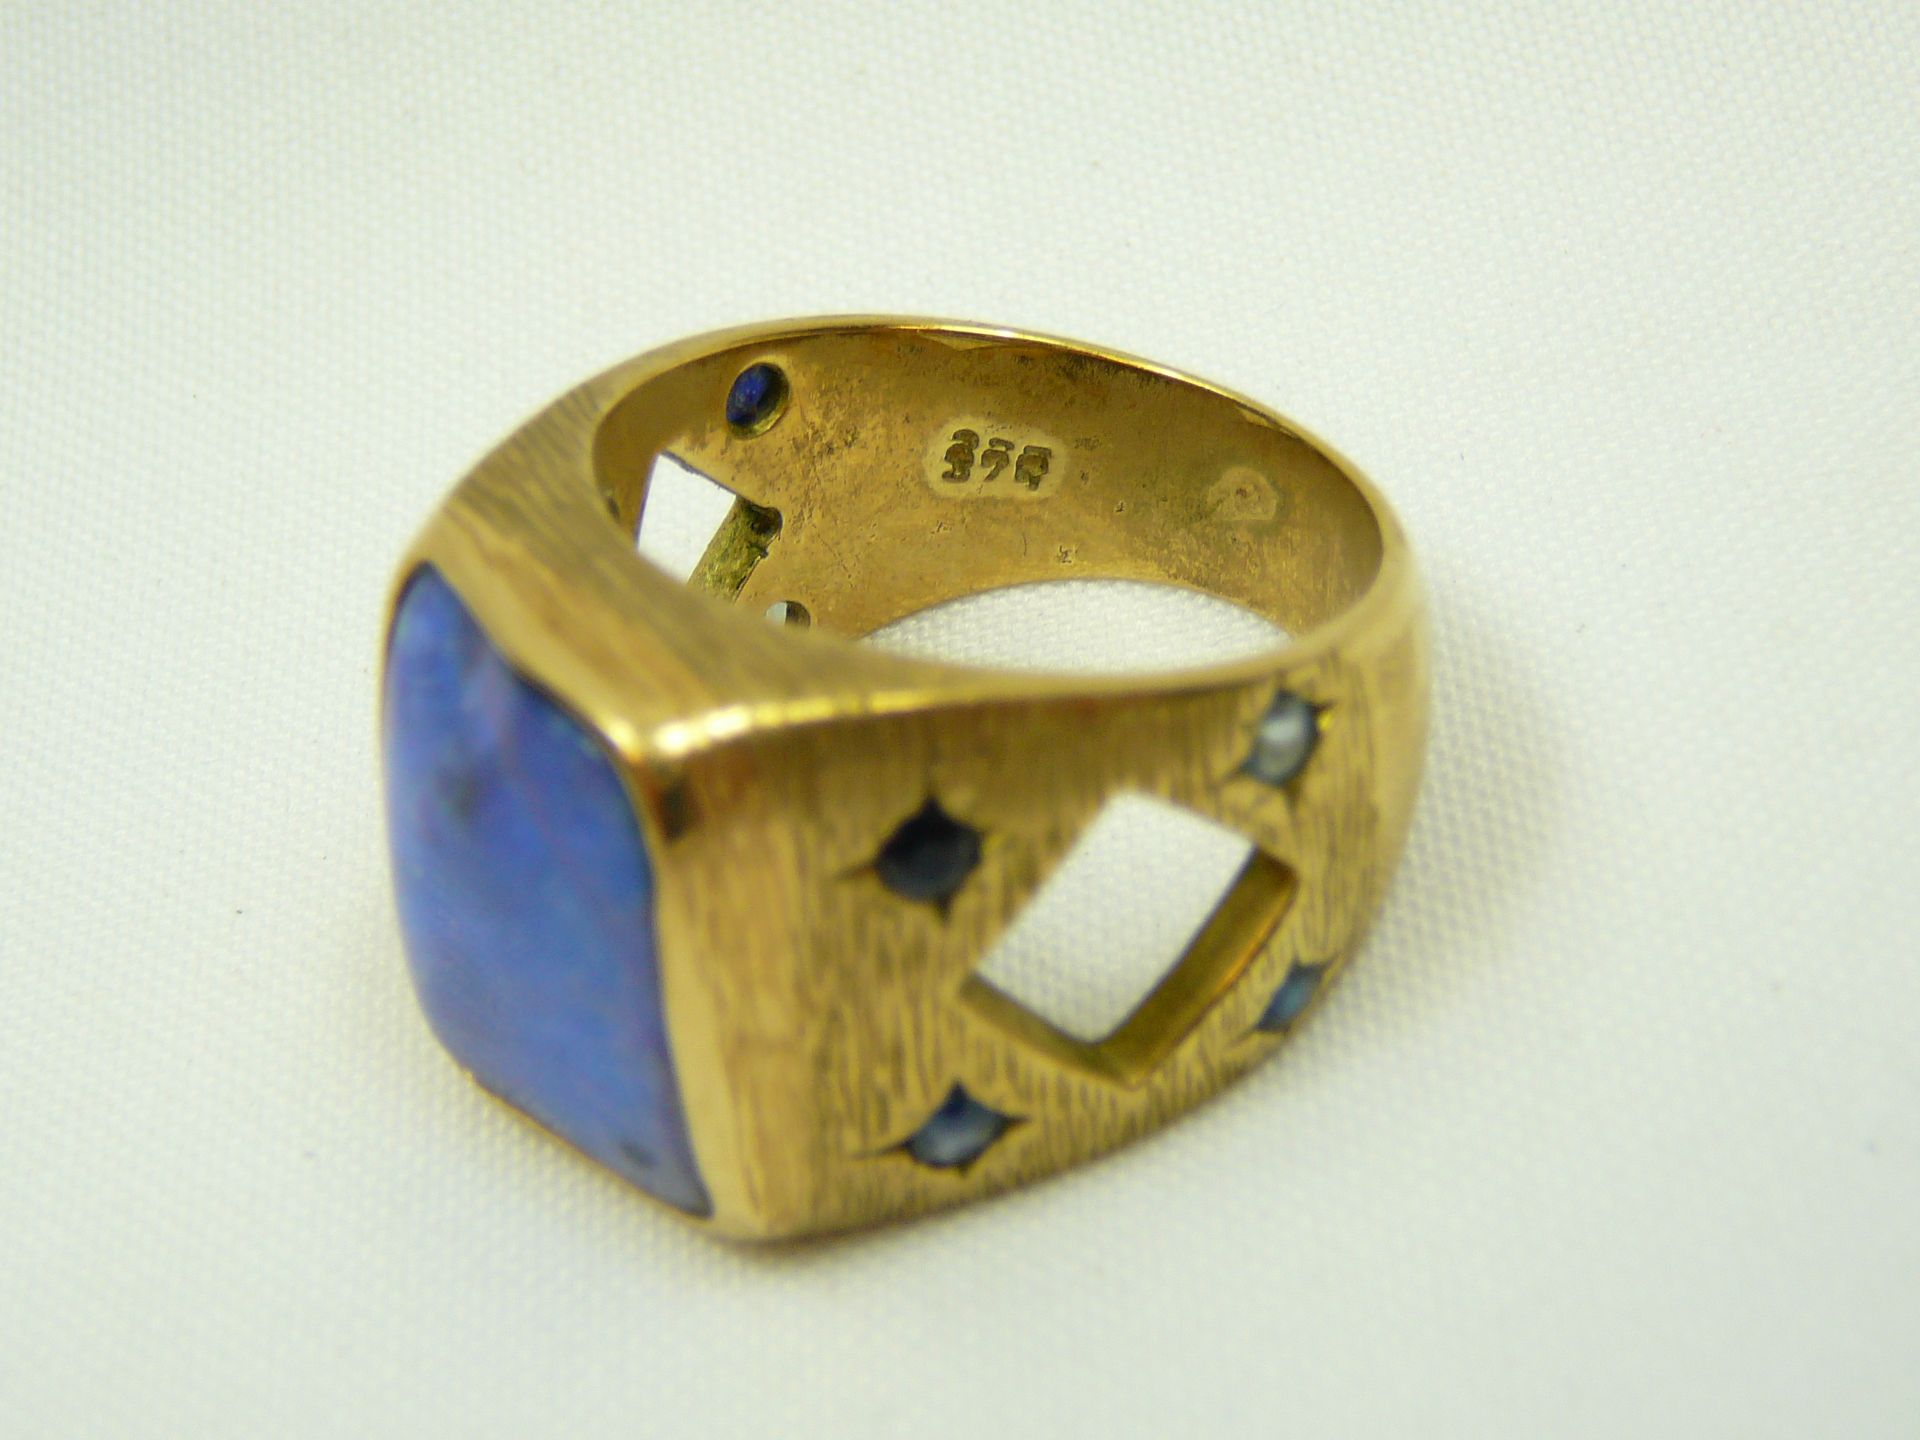 9 Carat Gold Lapis Lazuli Huge Ring - Image 6 of 7